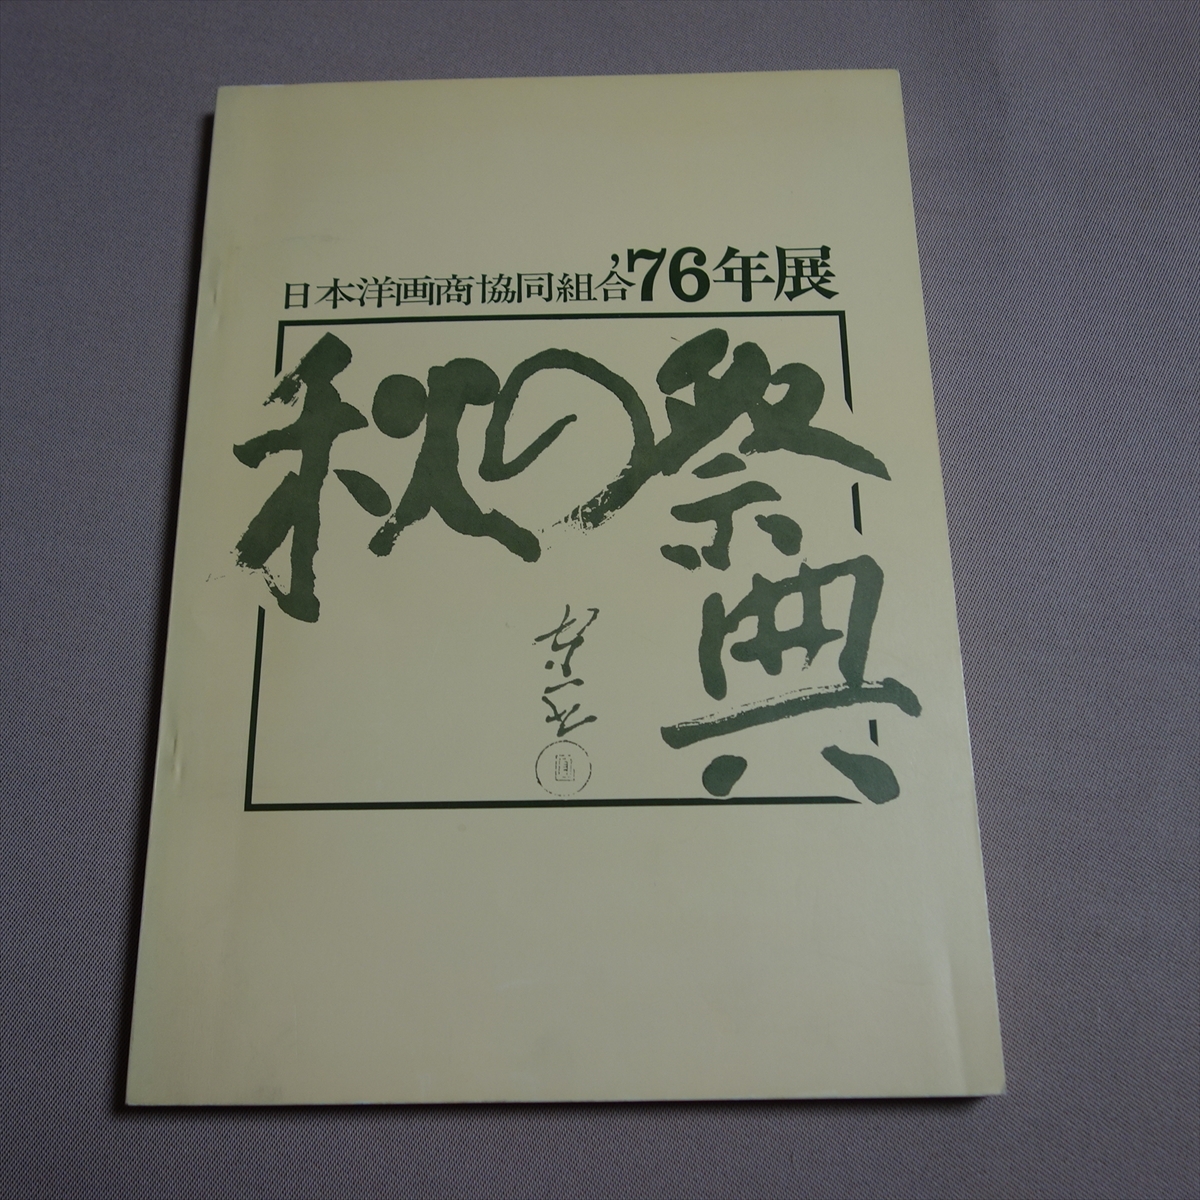 Japan Western Art Dealers Association '76 Ausstellung Herbstfestival / Katalog Showa, Malerei, Kunstbuch, Sammlung, Katalog